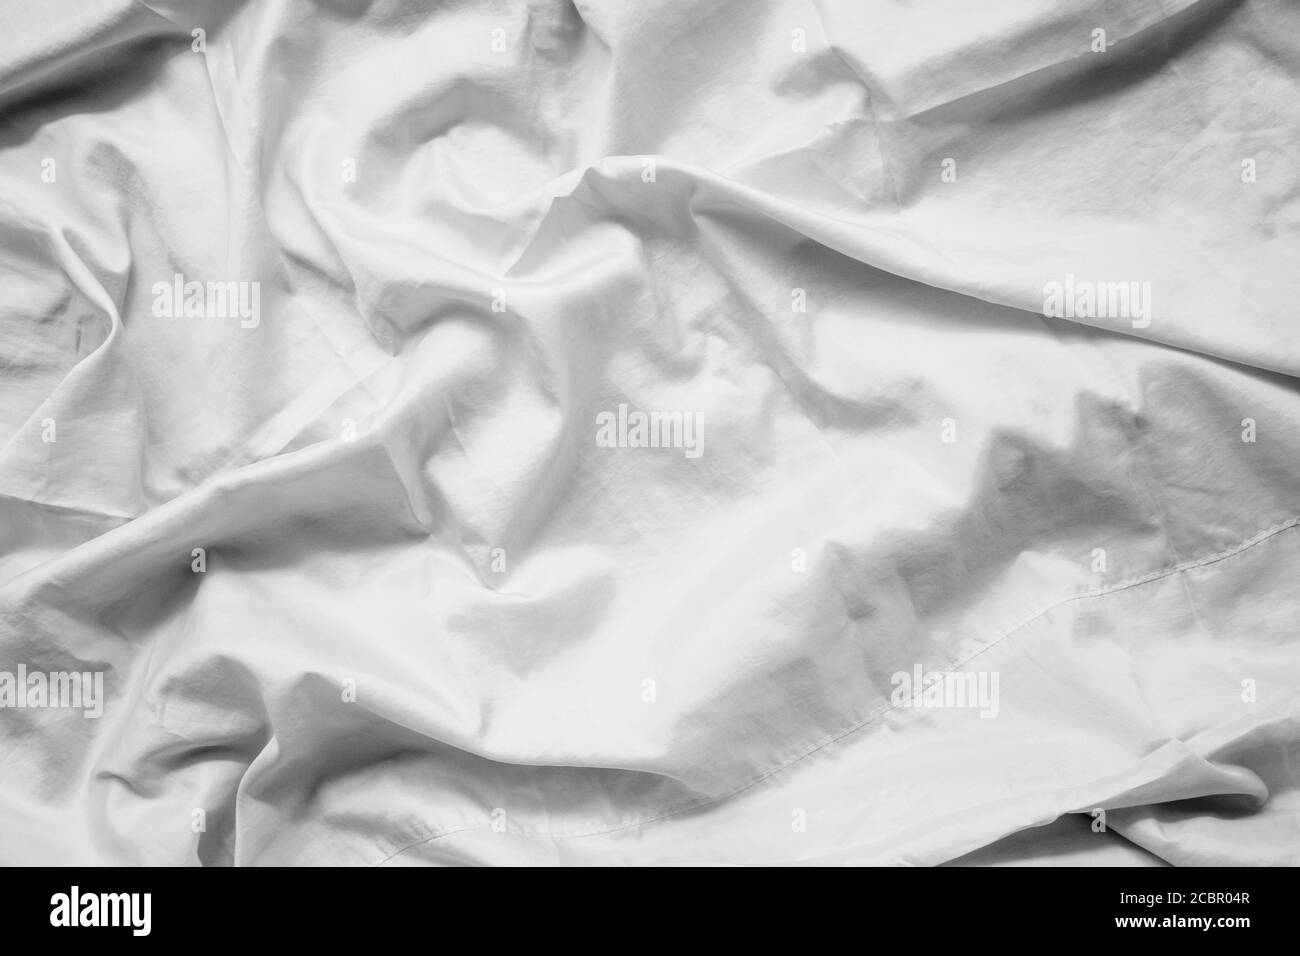 Weiß Stoff abstrakt Hintergrund Konzept. Weiß zerknittert Seide Tuch Welle Textur Satin Material Stockfoto